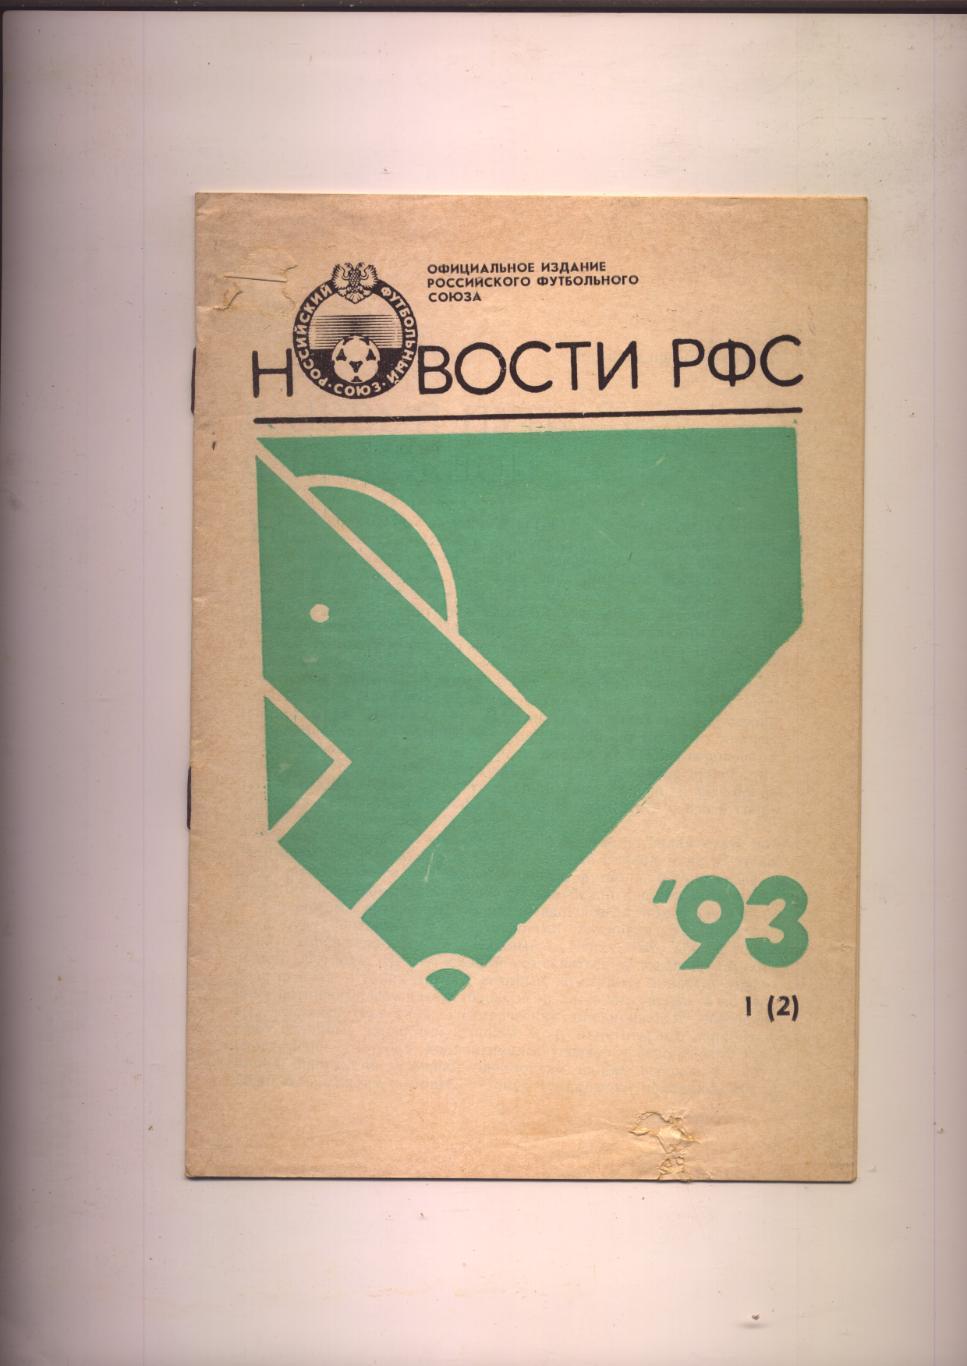 Футбол Новости РФС 1993 № 1 (2)